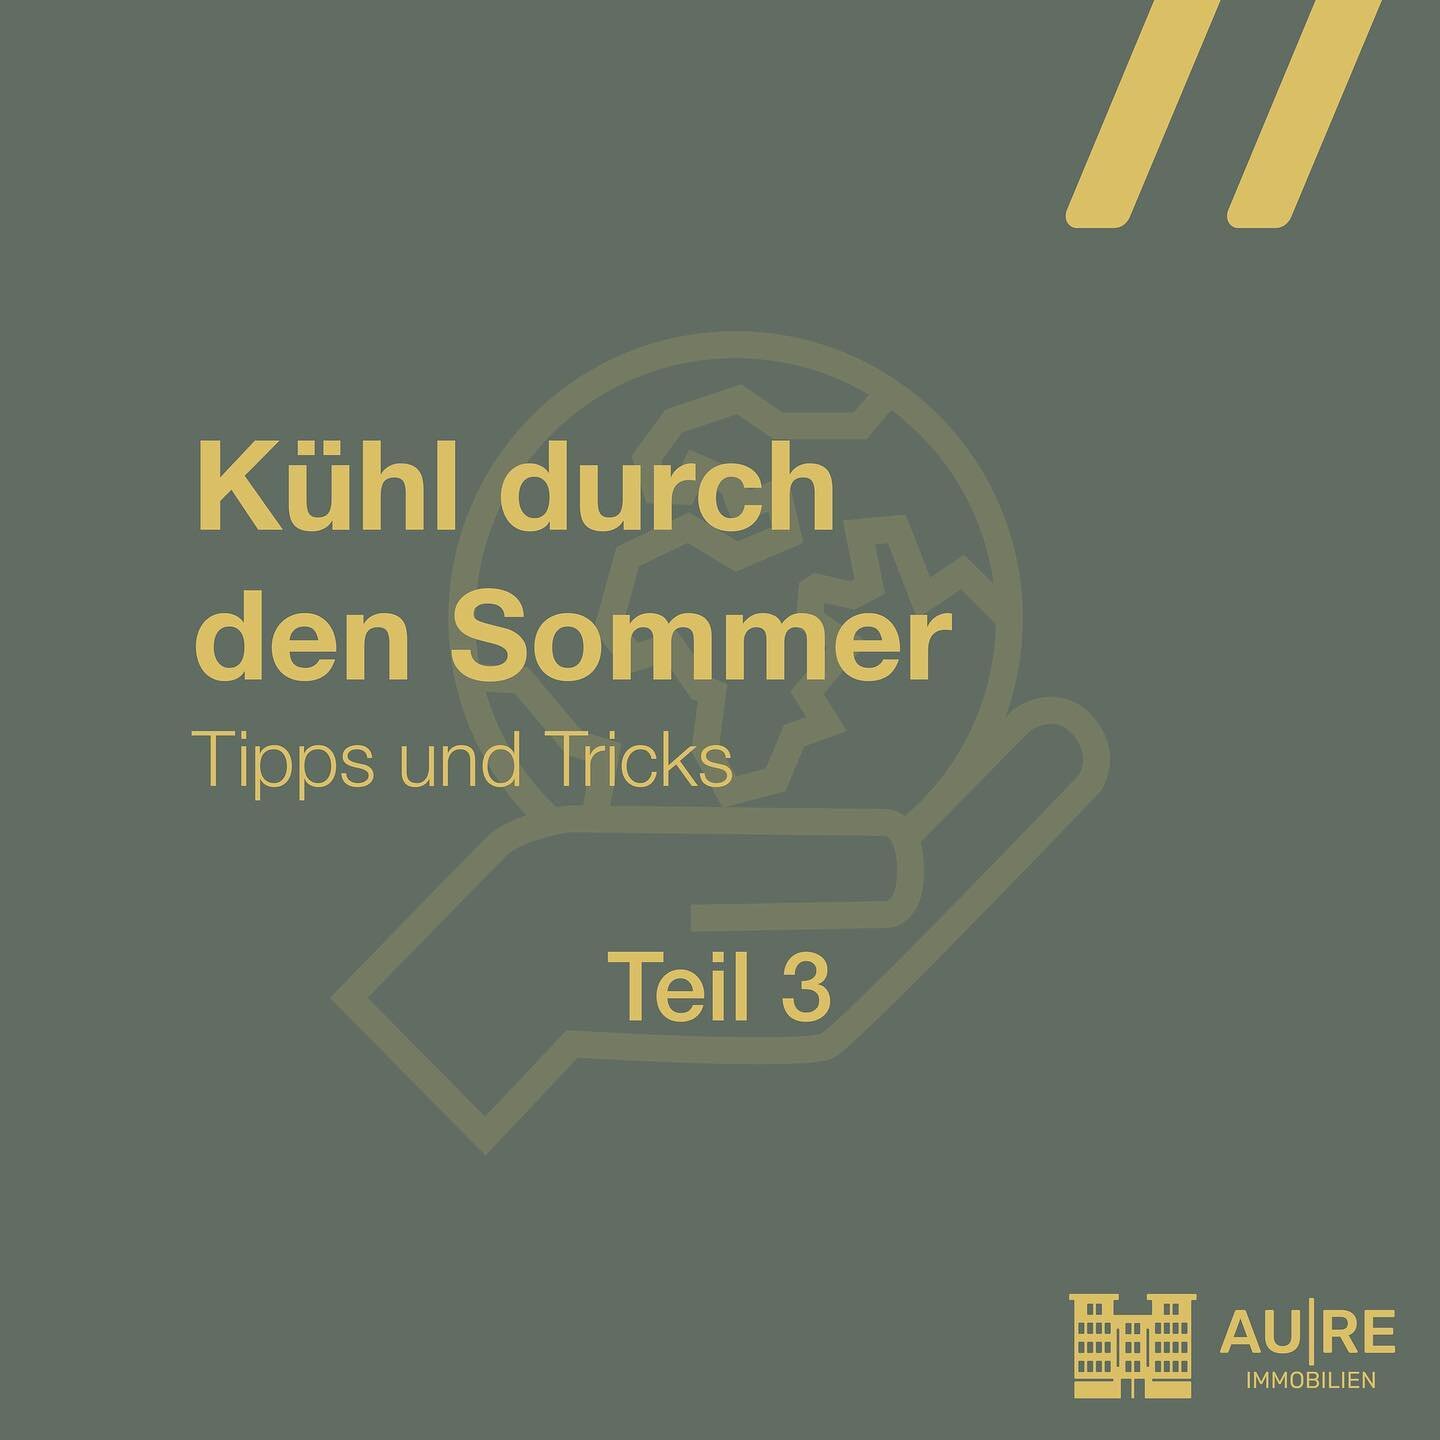 Heute stellen wir euch den letzten Teil unseres Themas &quot;K&uuml;hl durch den Sommer&quot; vor! ☀️
Na, welcher Tipp funktioniert eurer Meinung nach am Besten? 😃 

#aureimmobilien #immobilien #realestate #sommer #summer #wien #vienna #austria